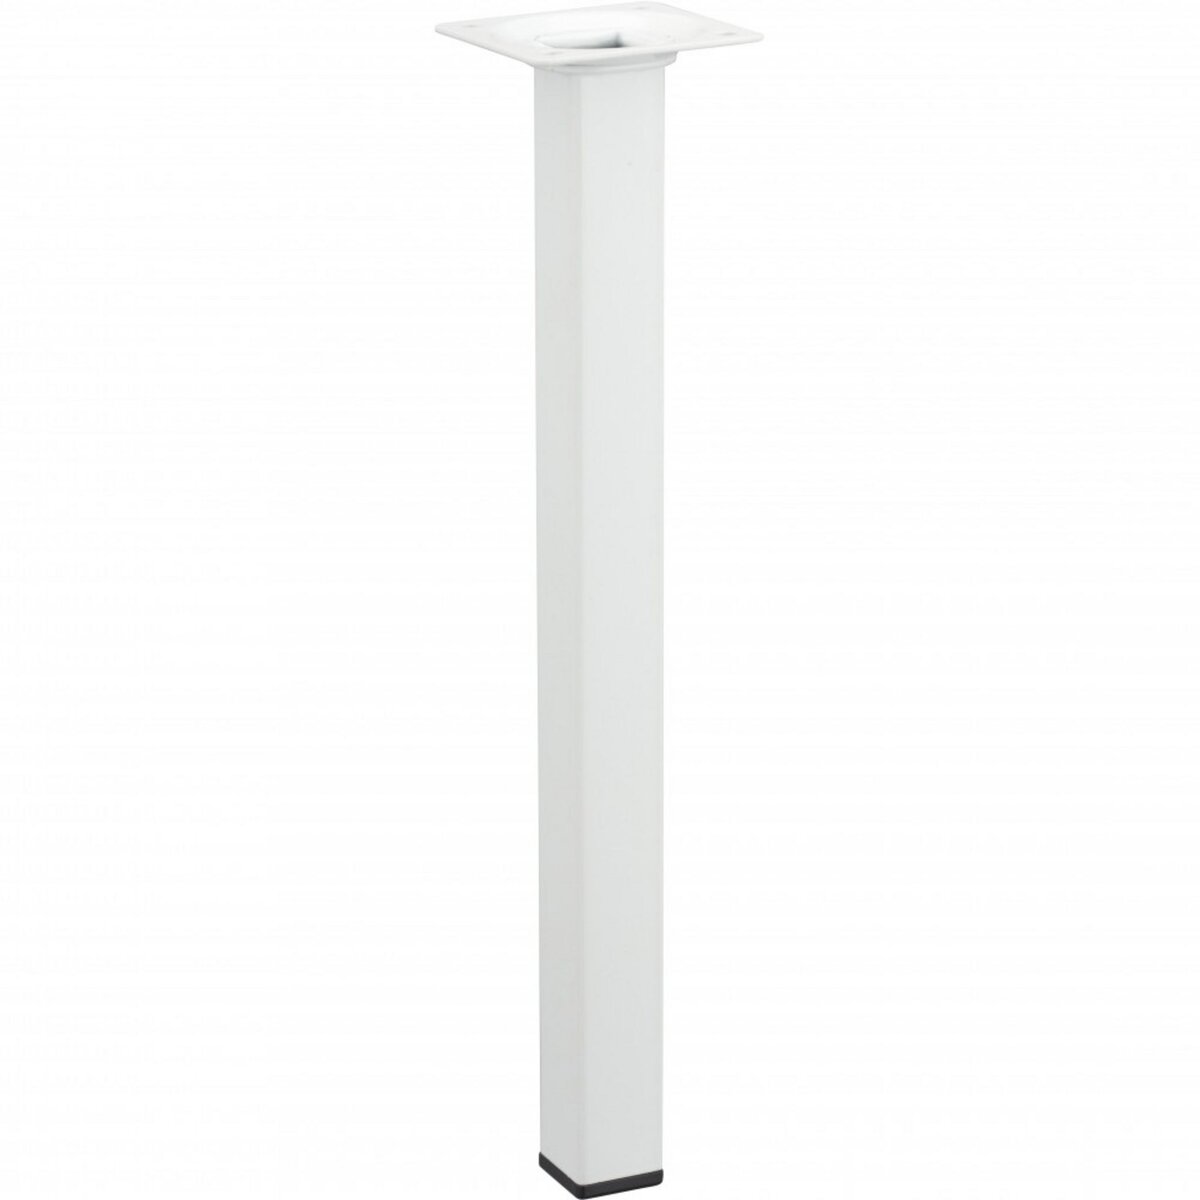 CENTRALE BRICO Pied de table basse carré fixe acier époxy blanc, 30 cm